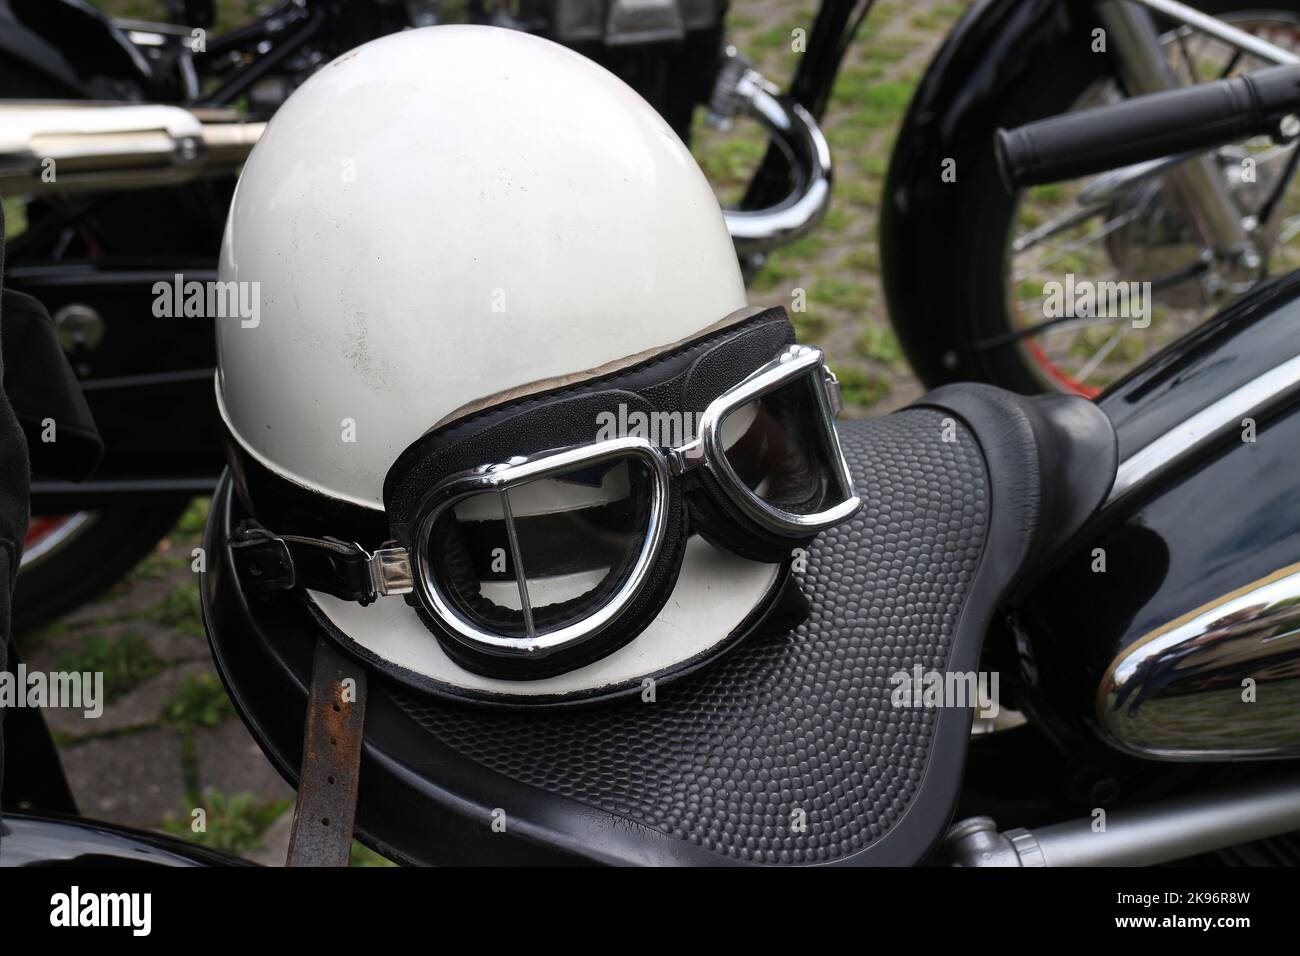 Casque d'accident vintage et lunettes de protection sur le siège de la moto Banque D'Images